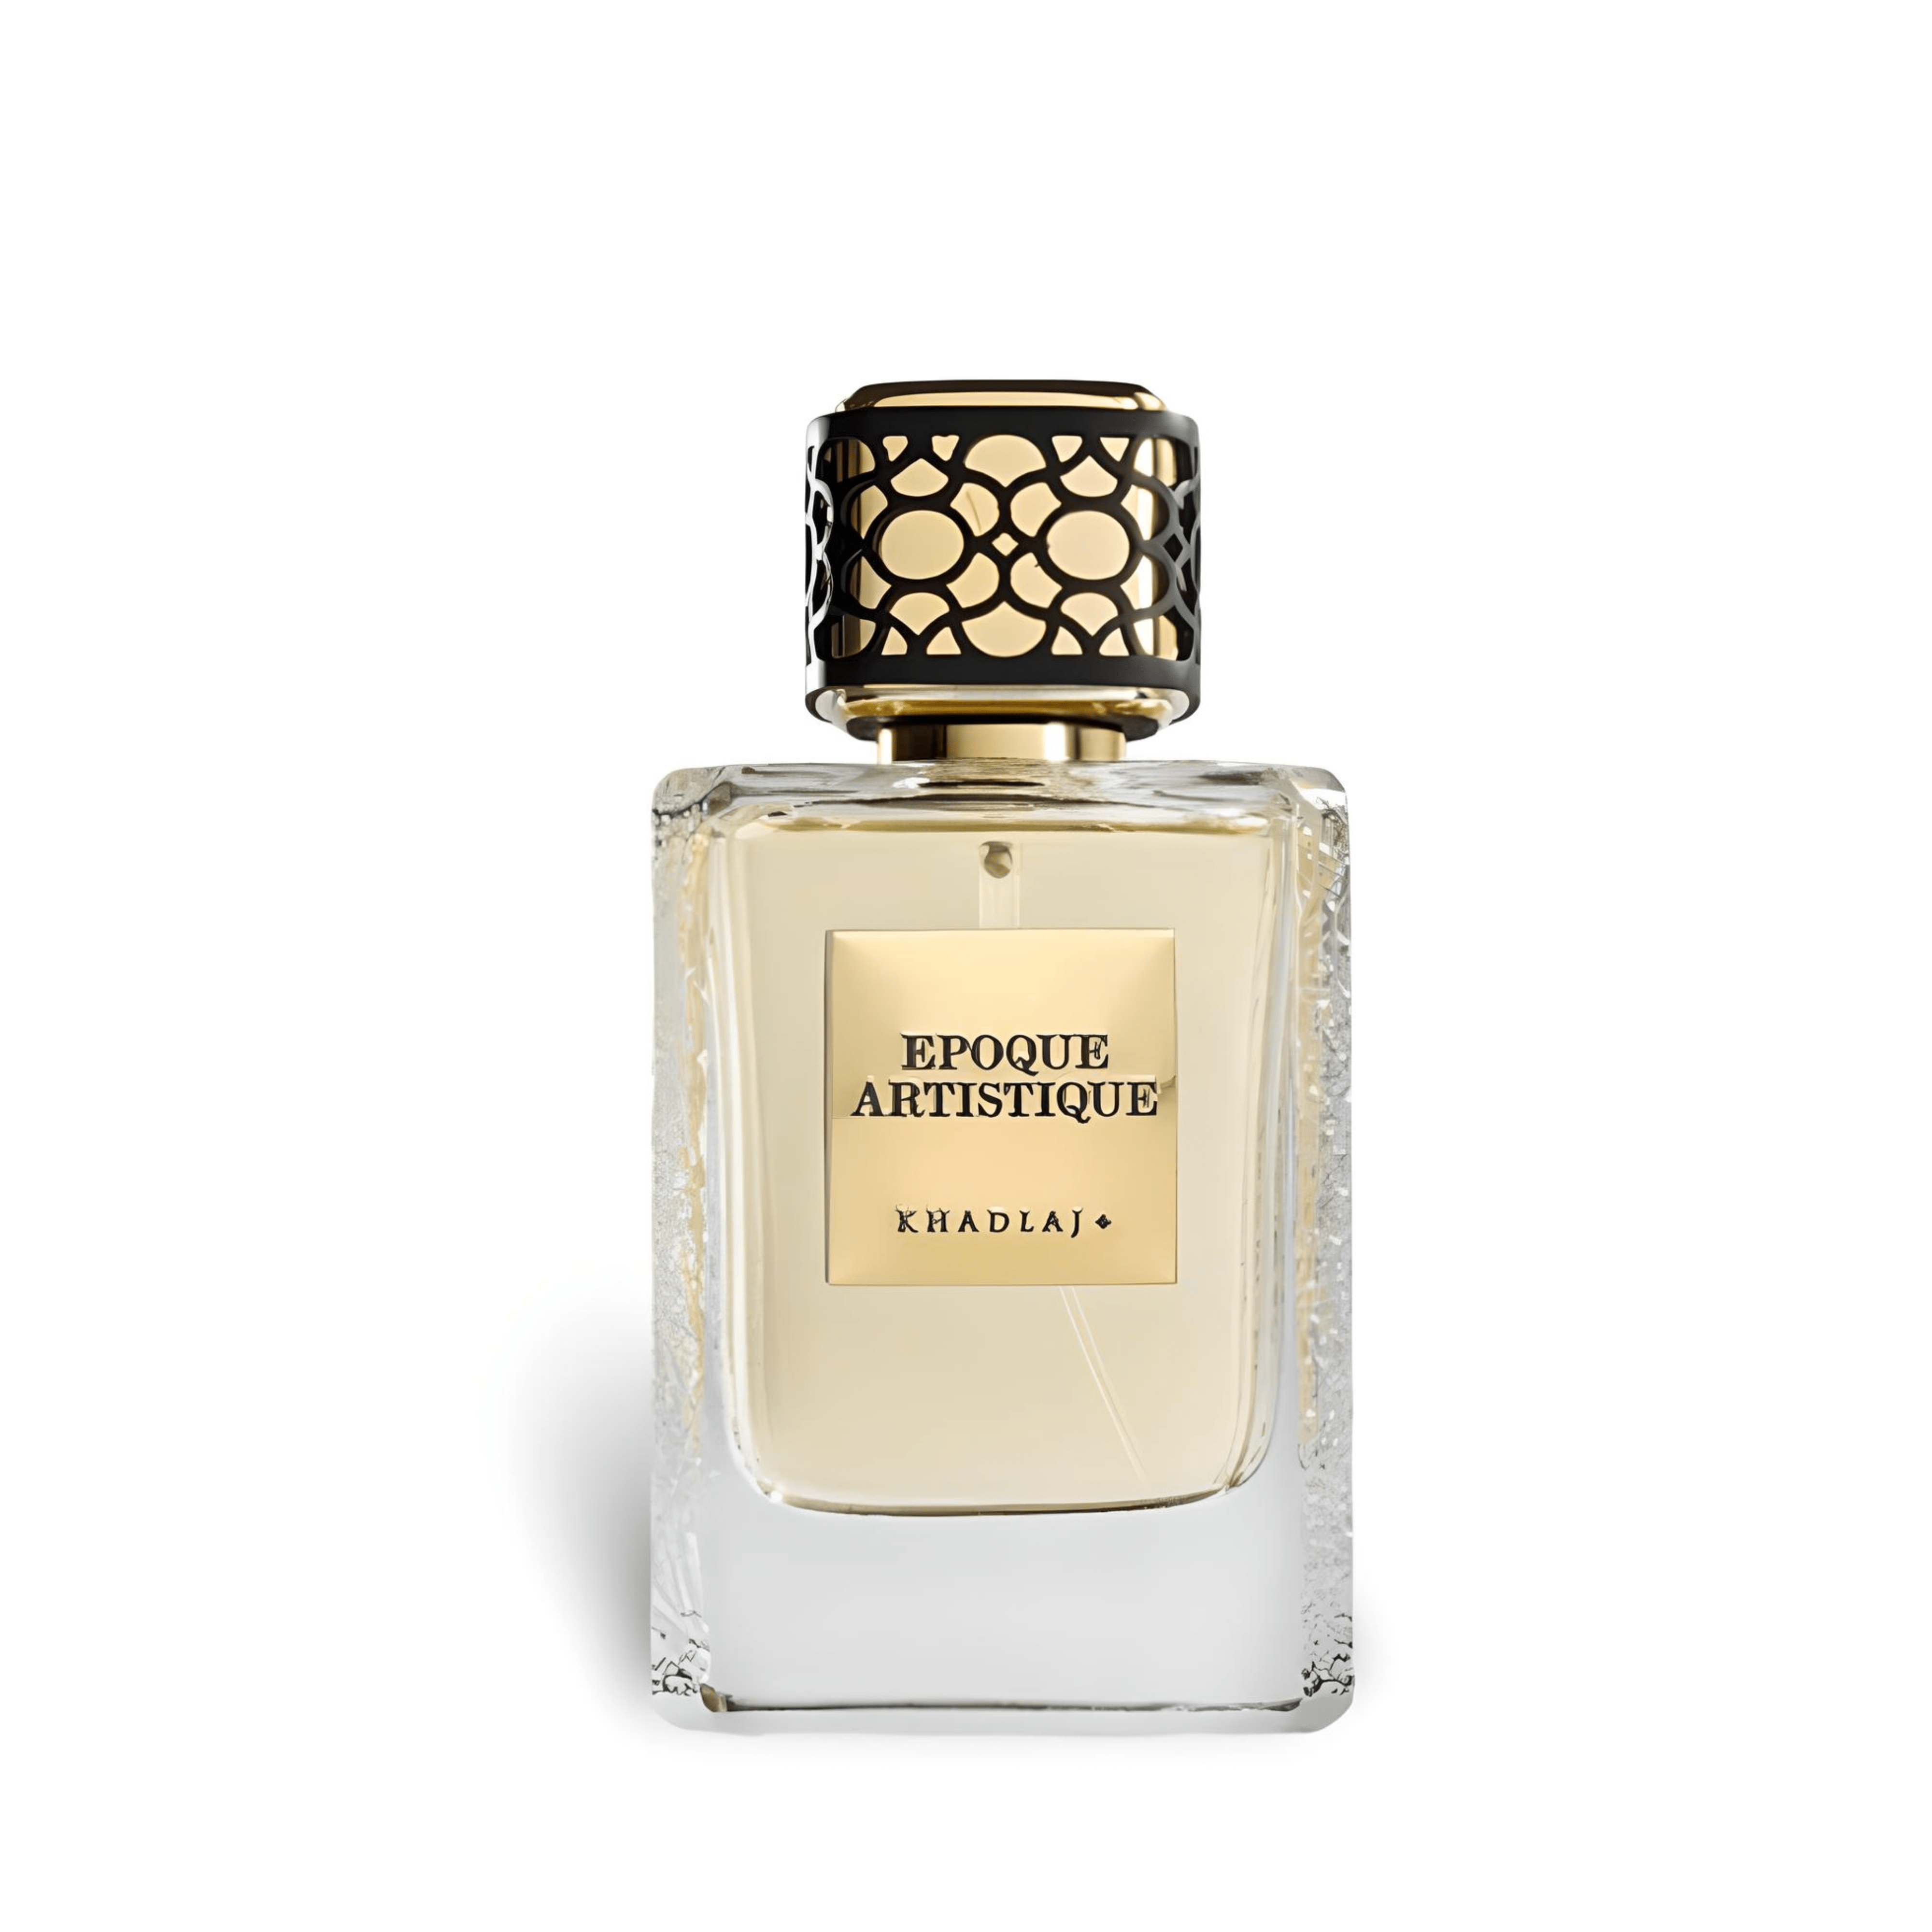 Maison Epoque Artistique Perfume / Eau De Parfum 100Ml By Khadlaj